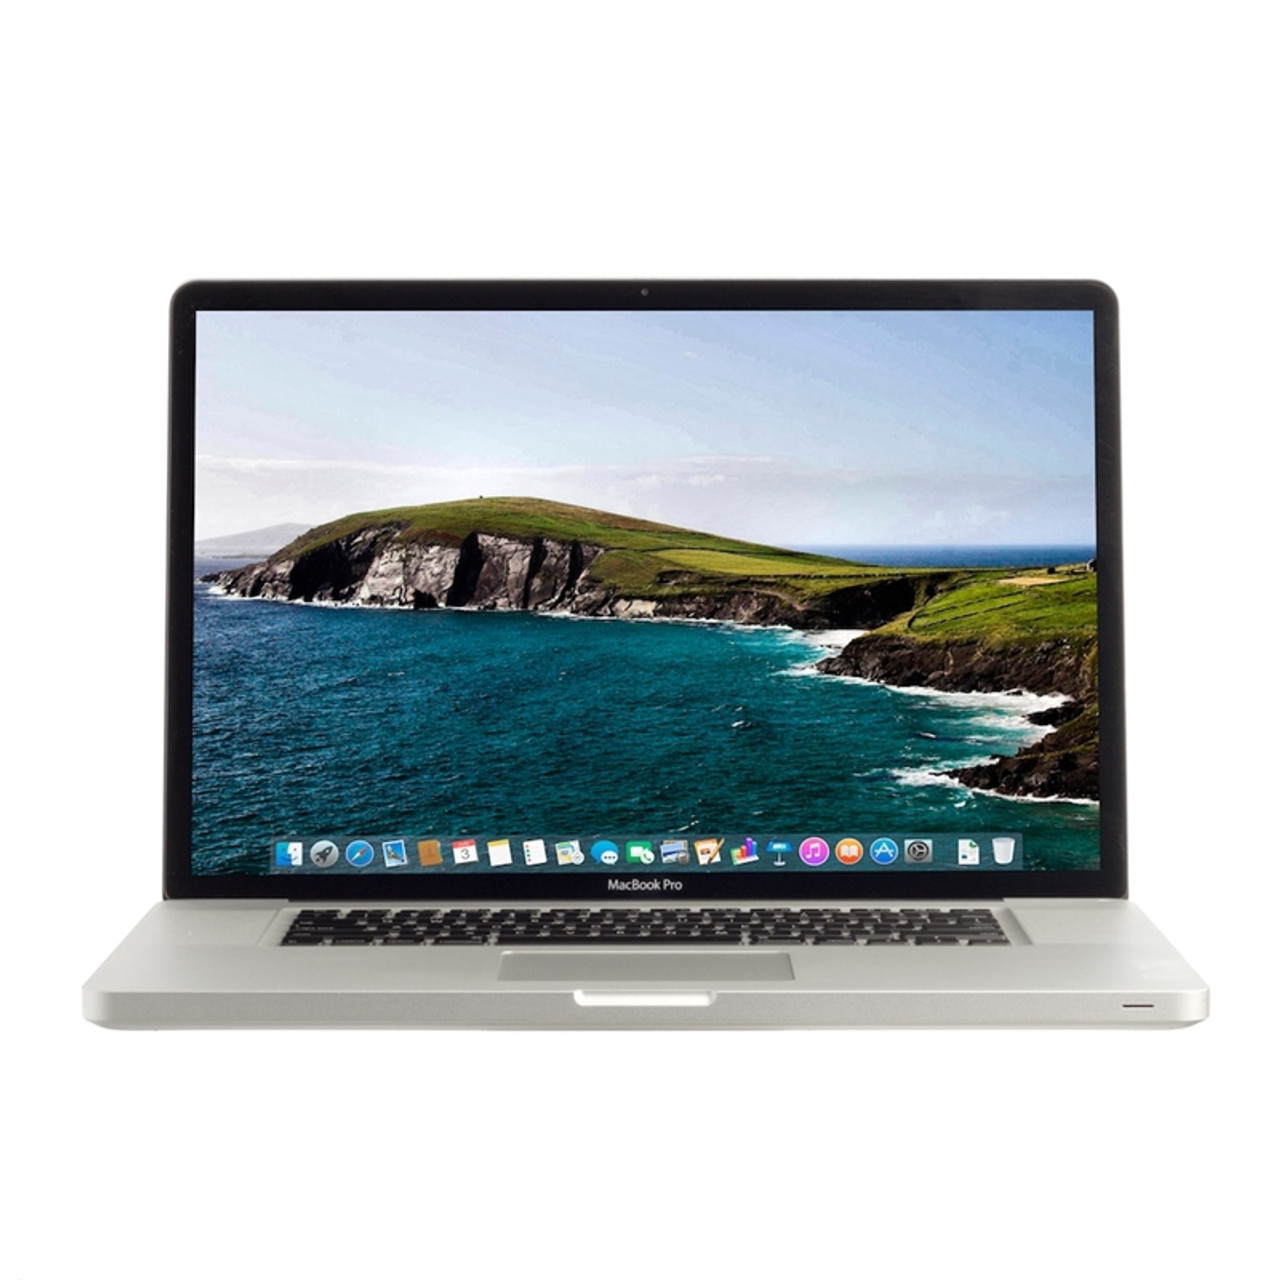 Observar Series de tiempo Gama de MacBook Pro 17" 2.2GHz (Early 2011)* | mac of all trades